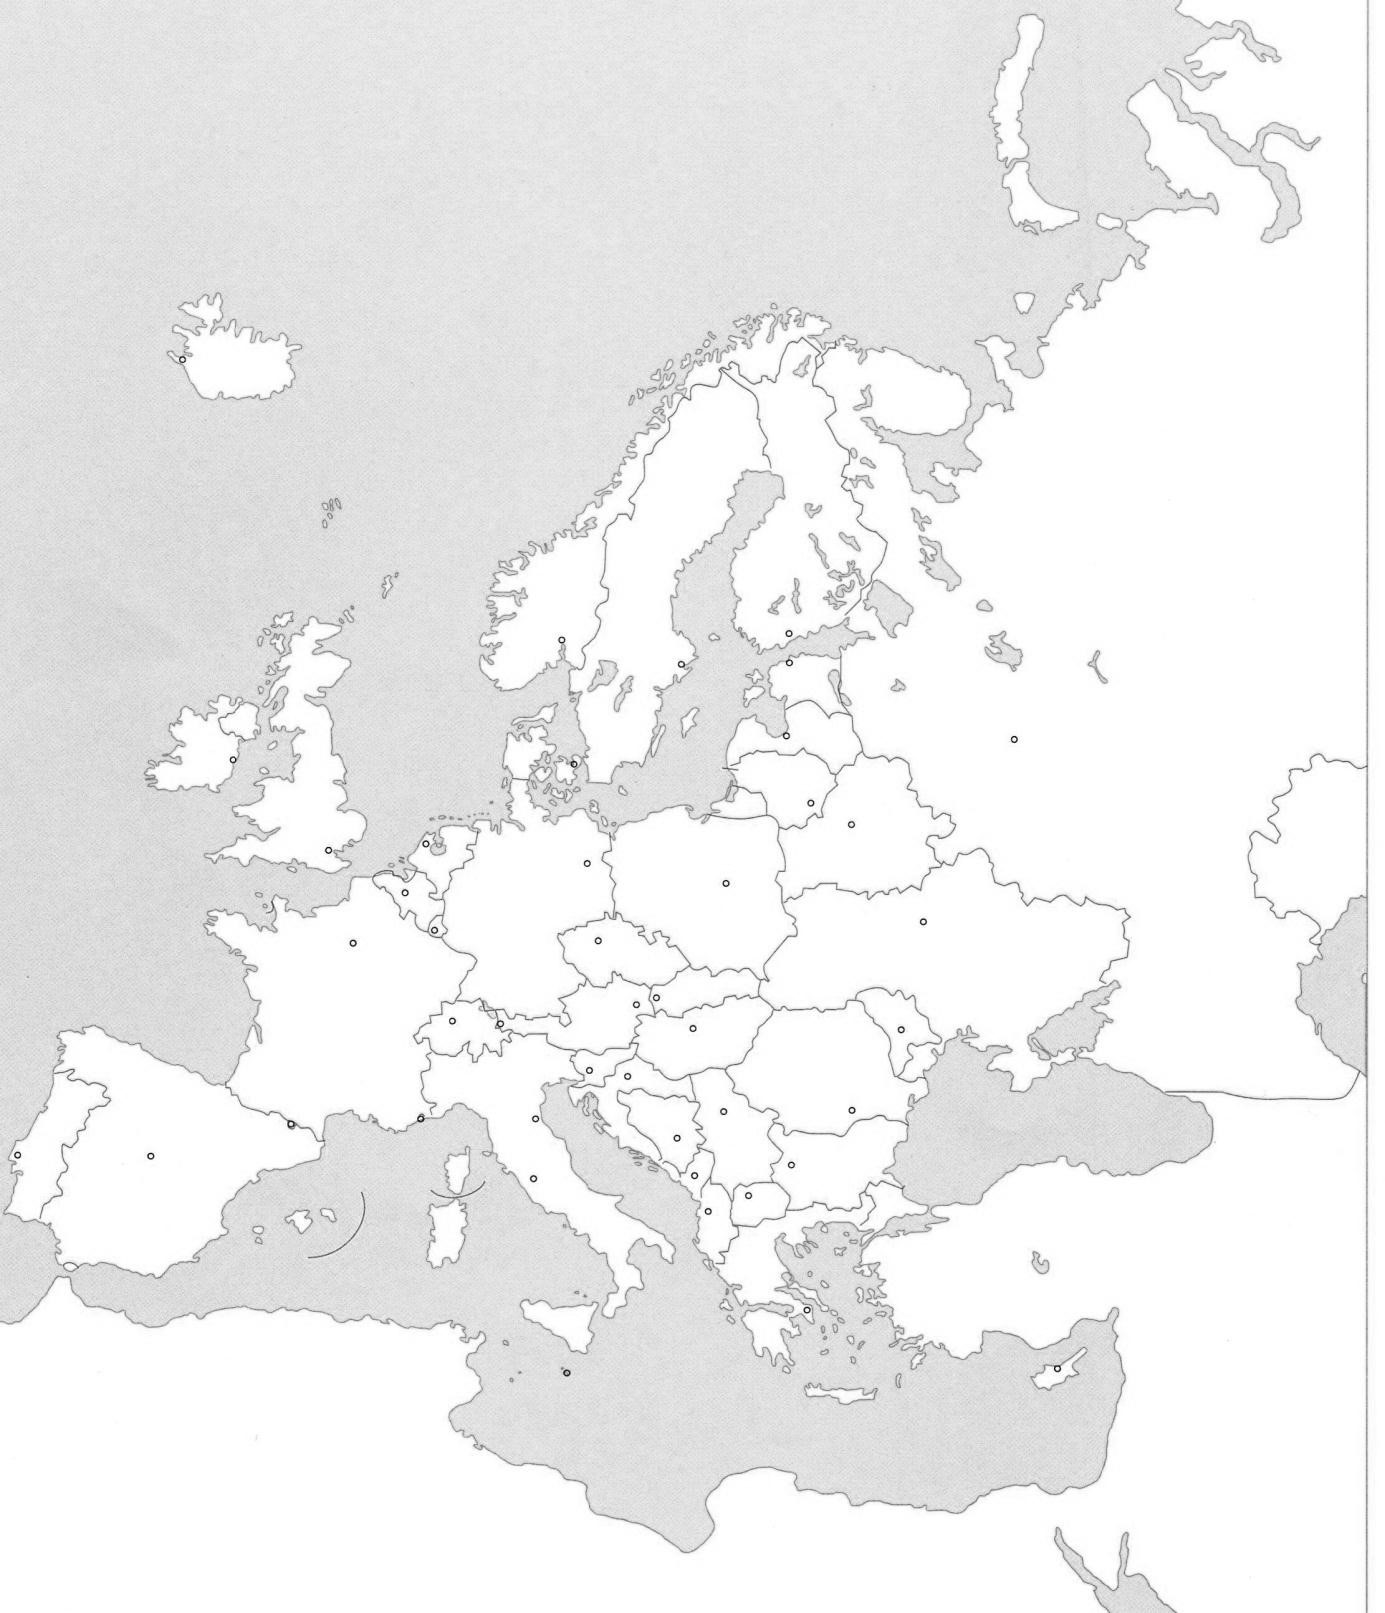 slijepa karta sjeverne europe Osnovna škola 